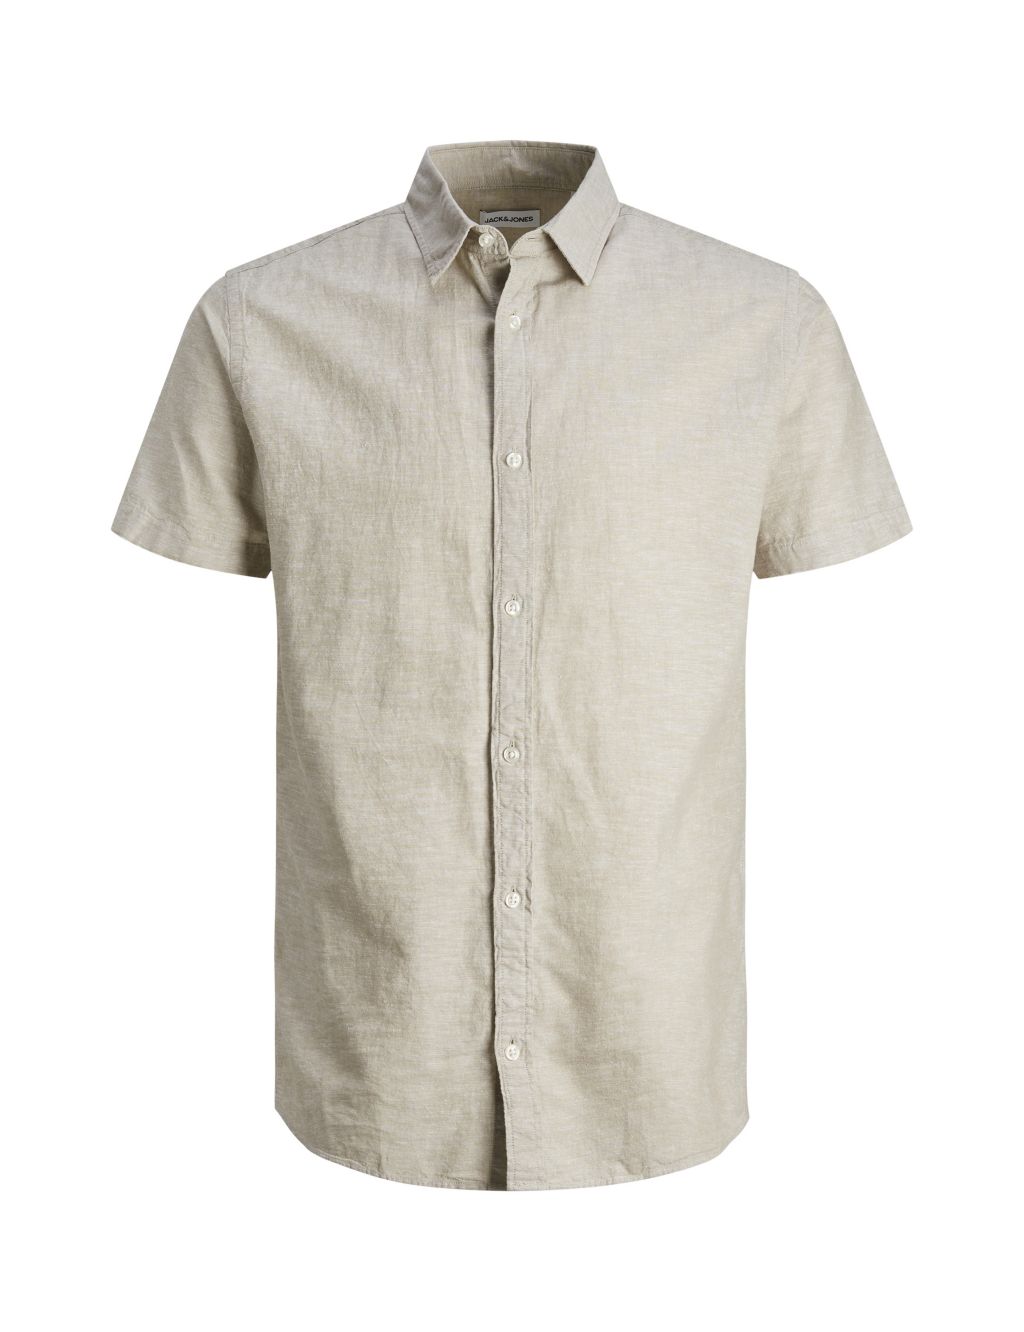 Cotton Linen Blend Oxford Shirt 1 of 2